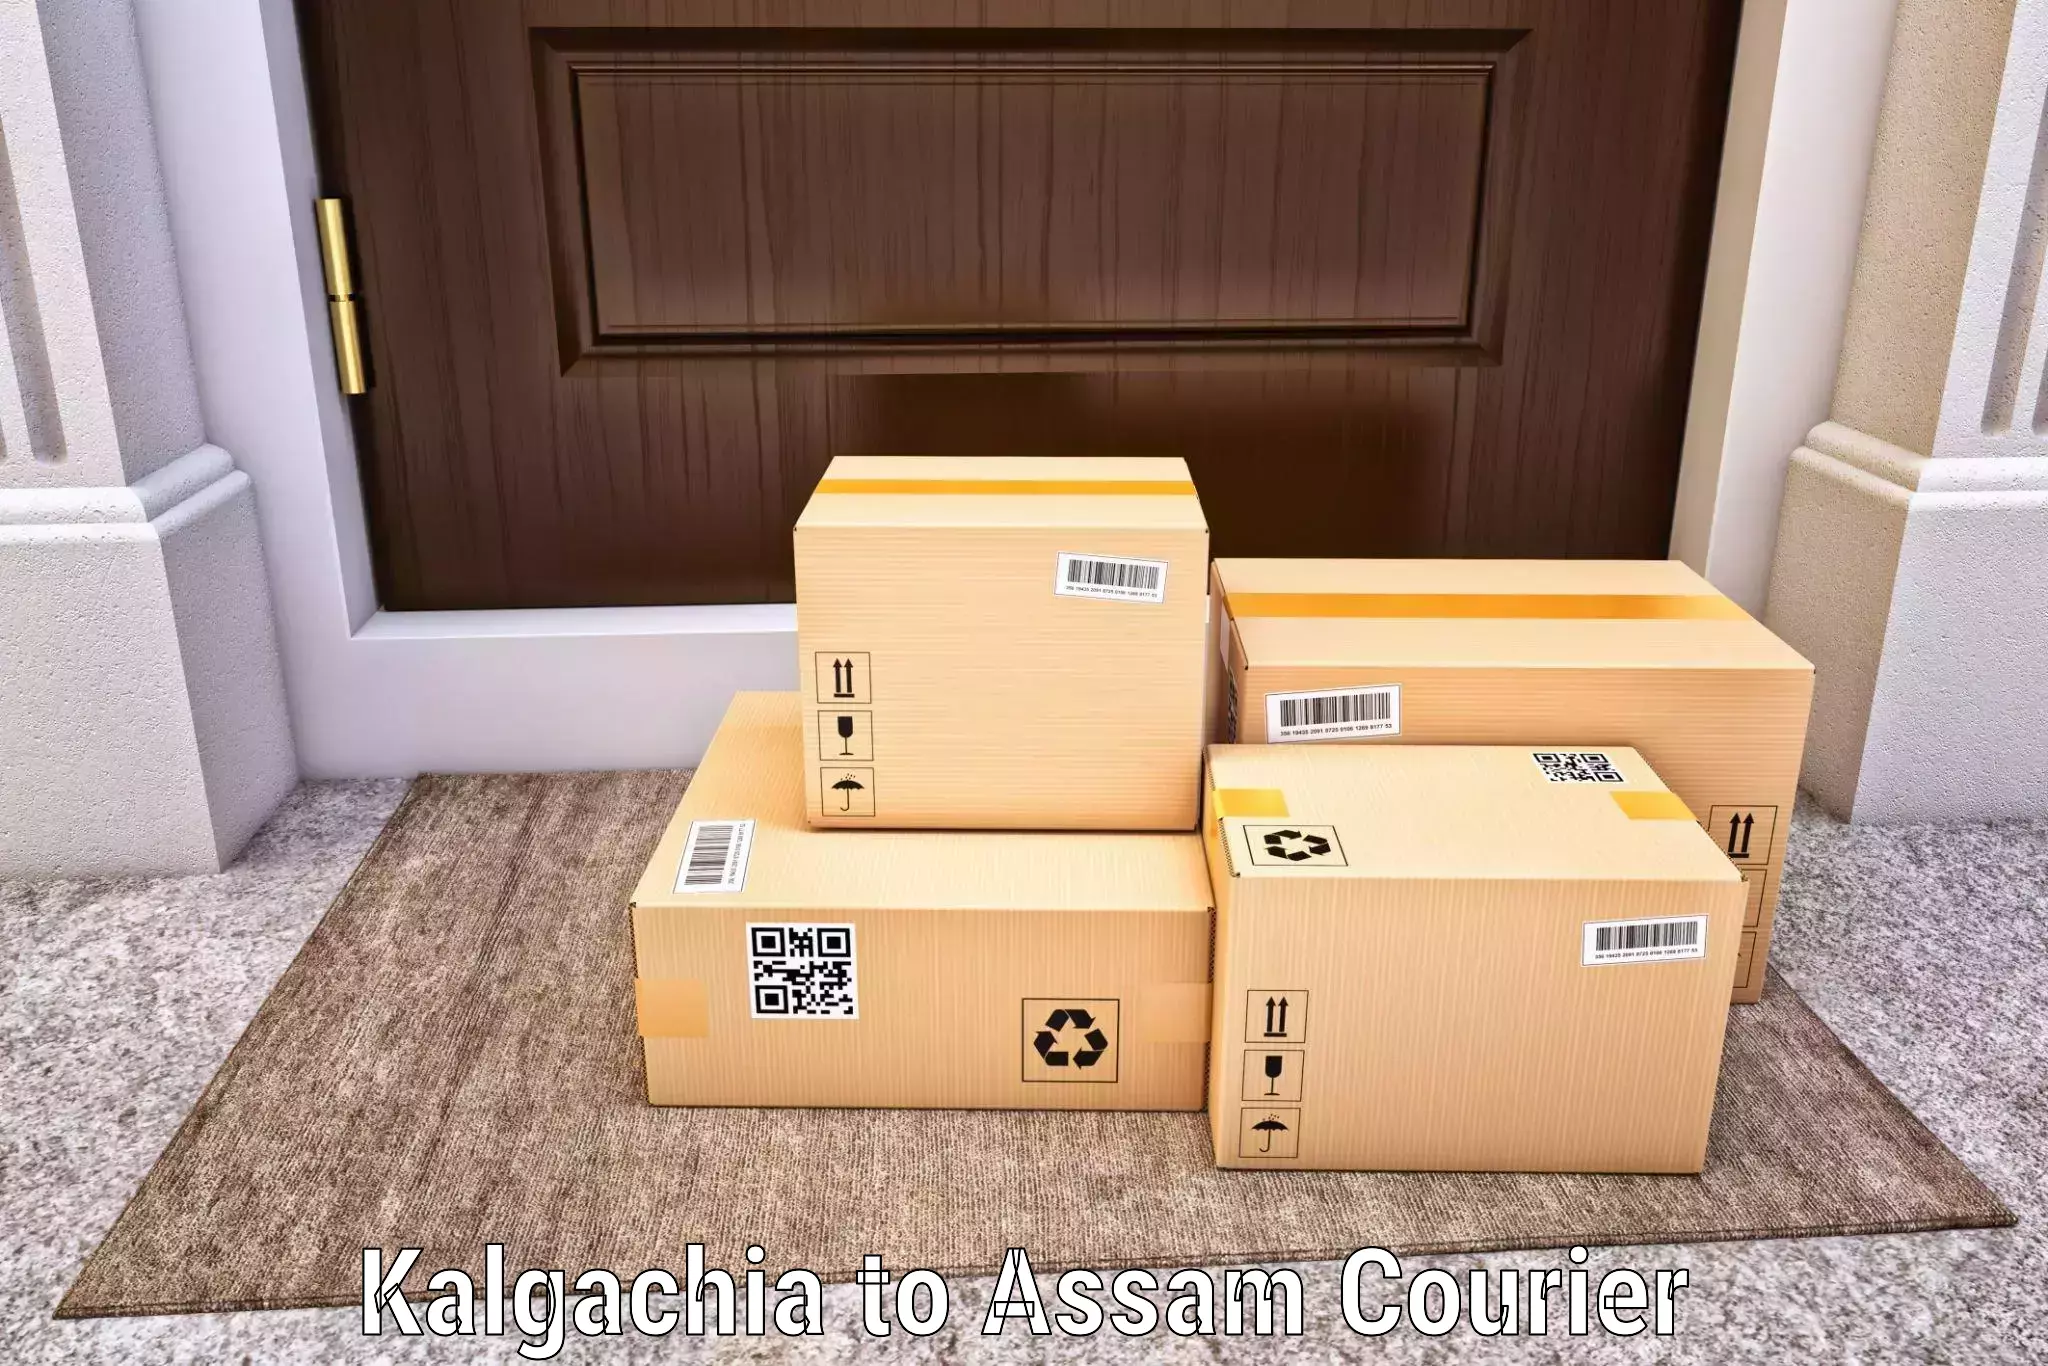 International courier networks Kalgachia to Hailakandi